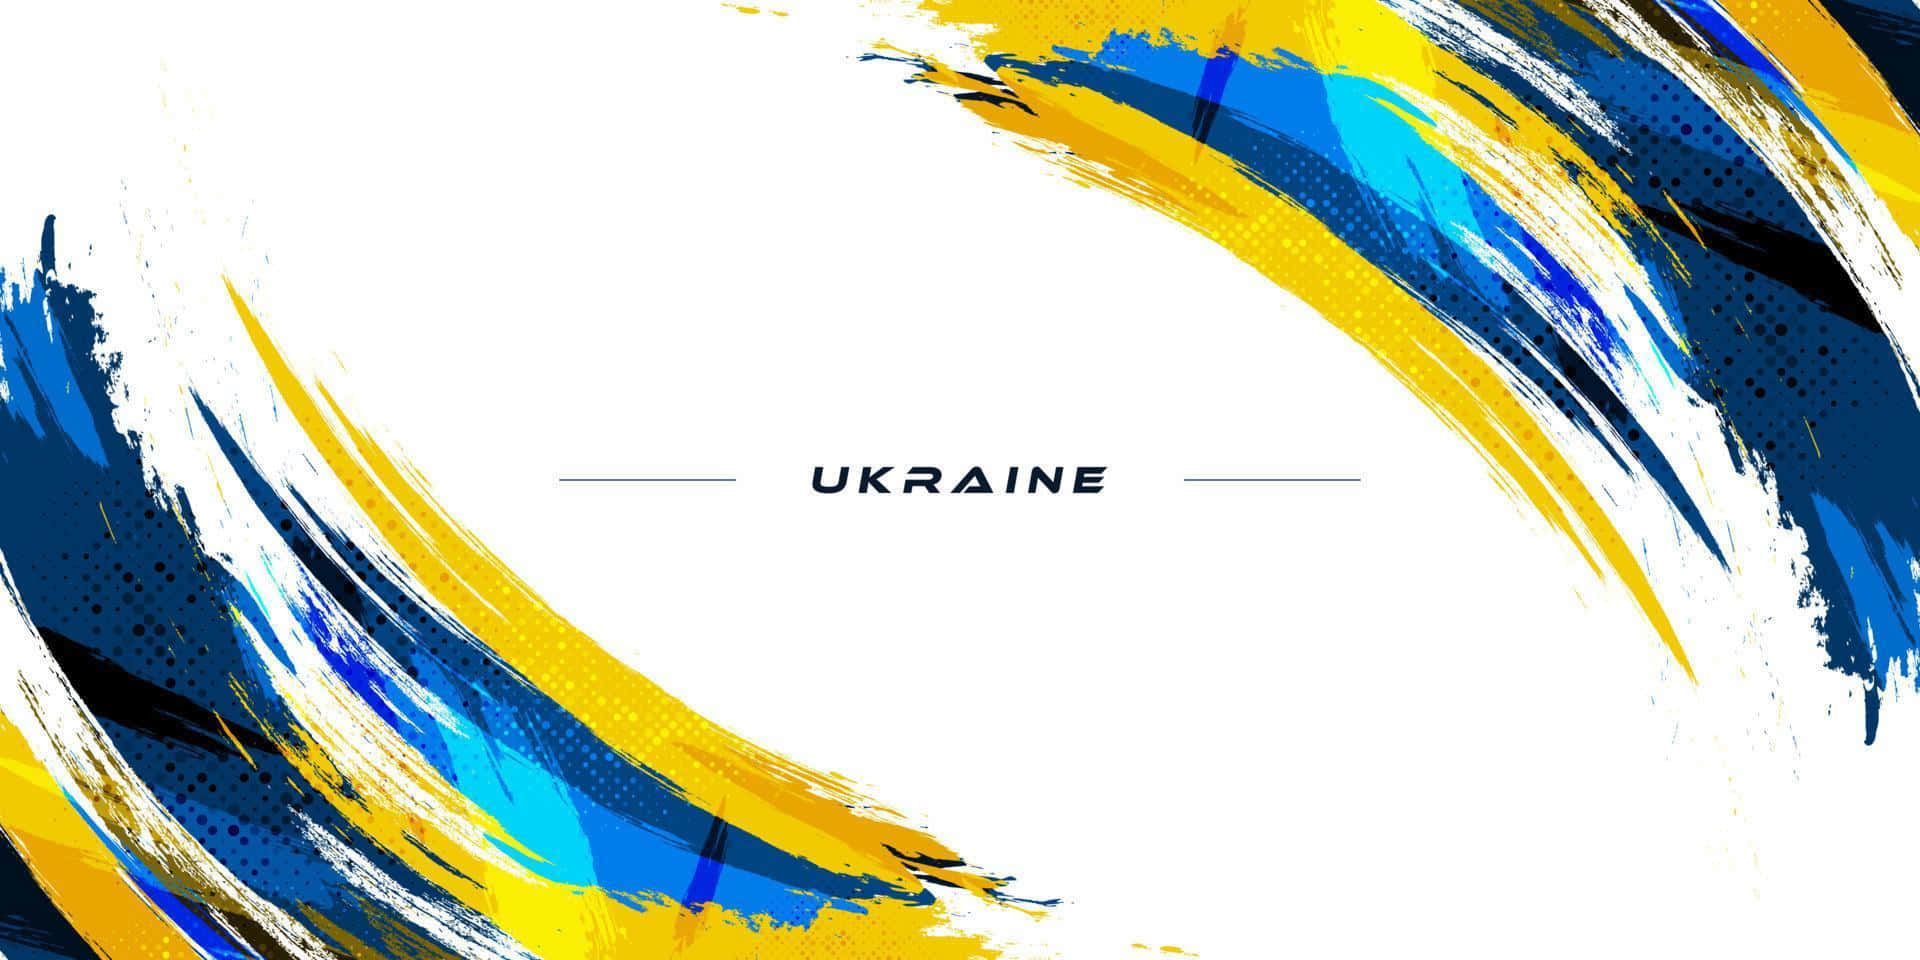 Fridsamtlandskap I Ukraina.